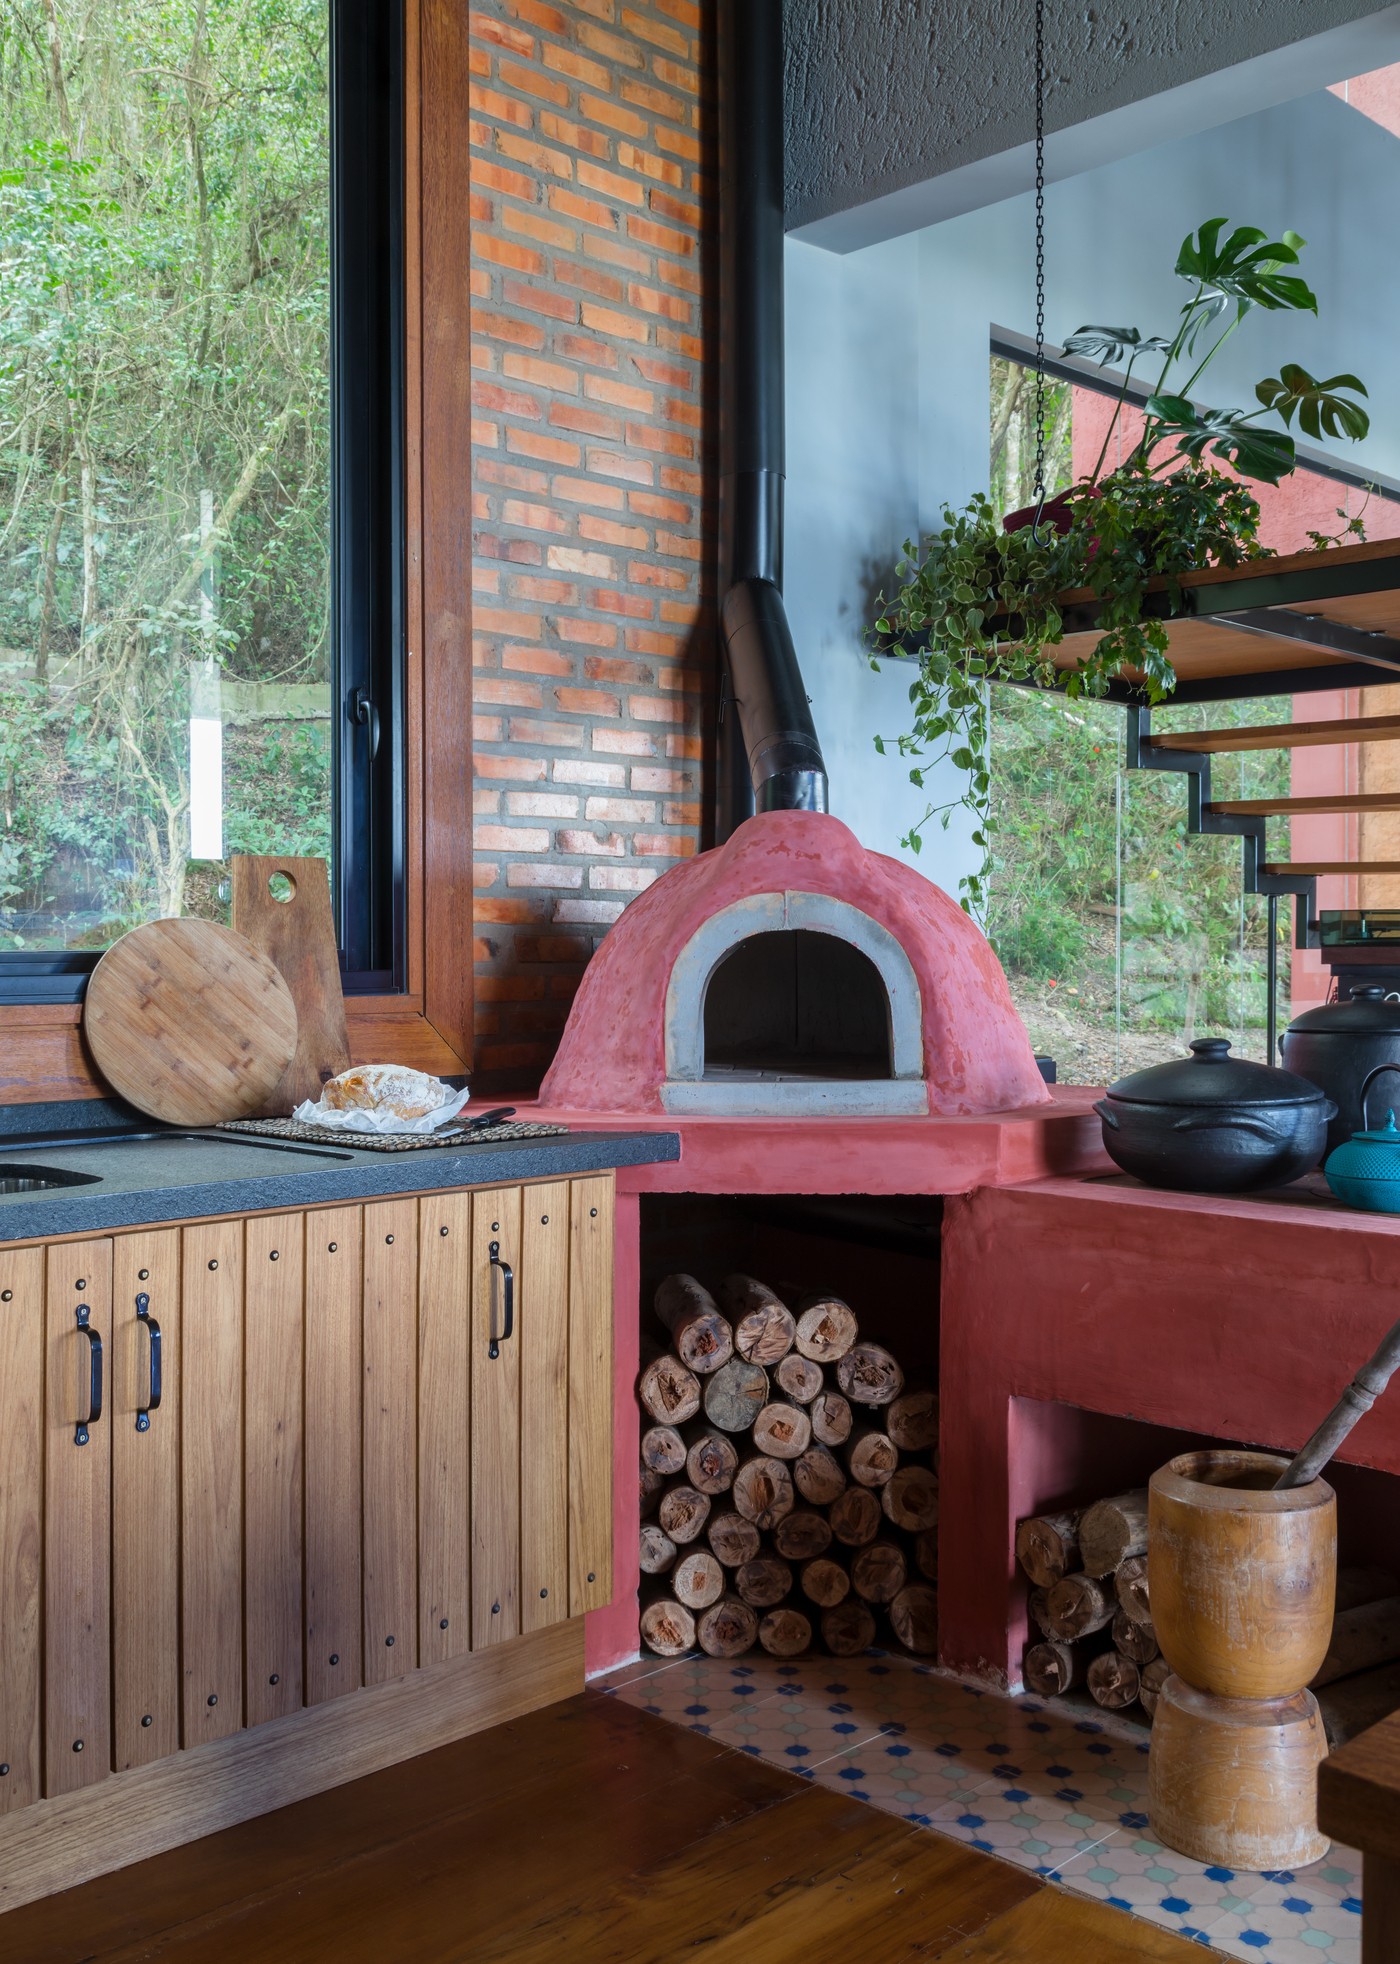 Décor do dia: cozinha com clima de fazenda tem forno de pizza e decoração rústica (Foto: Fábio Jr. Severo)